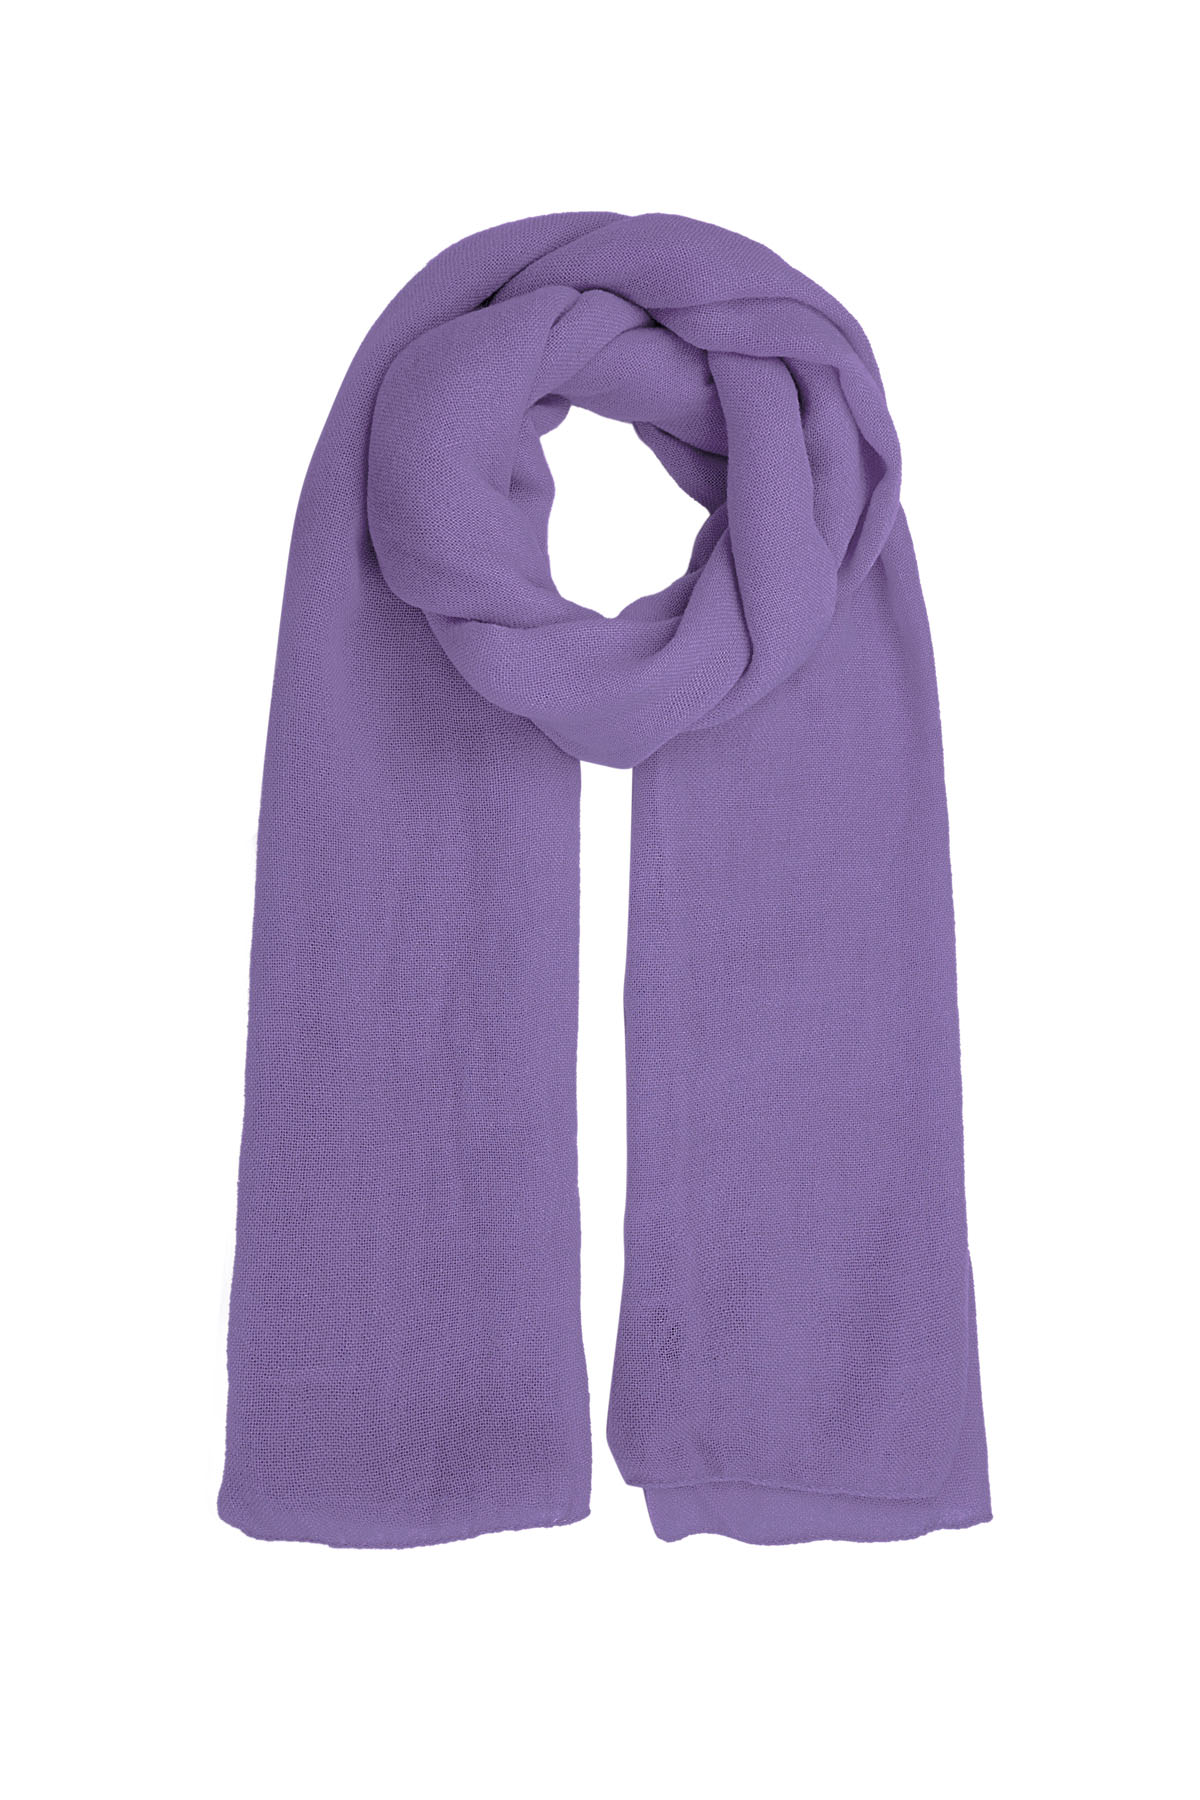 Sjaal effen kleur - lavendel